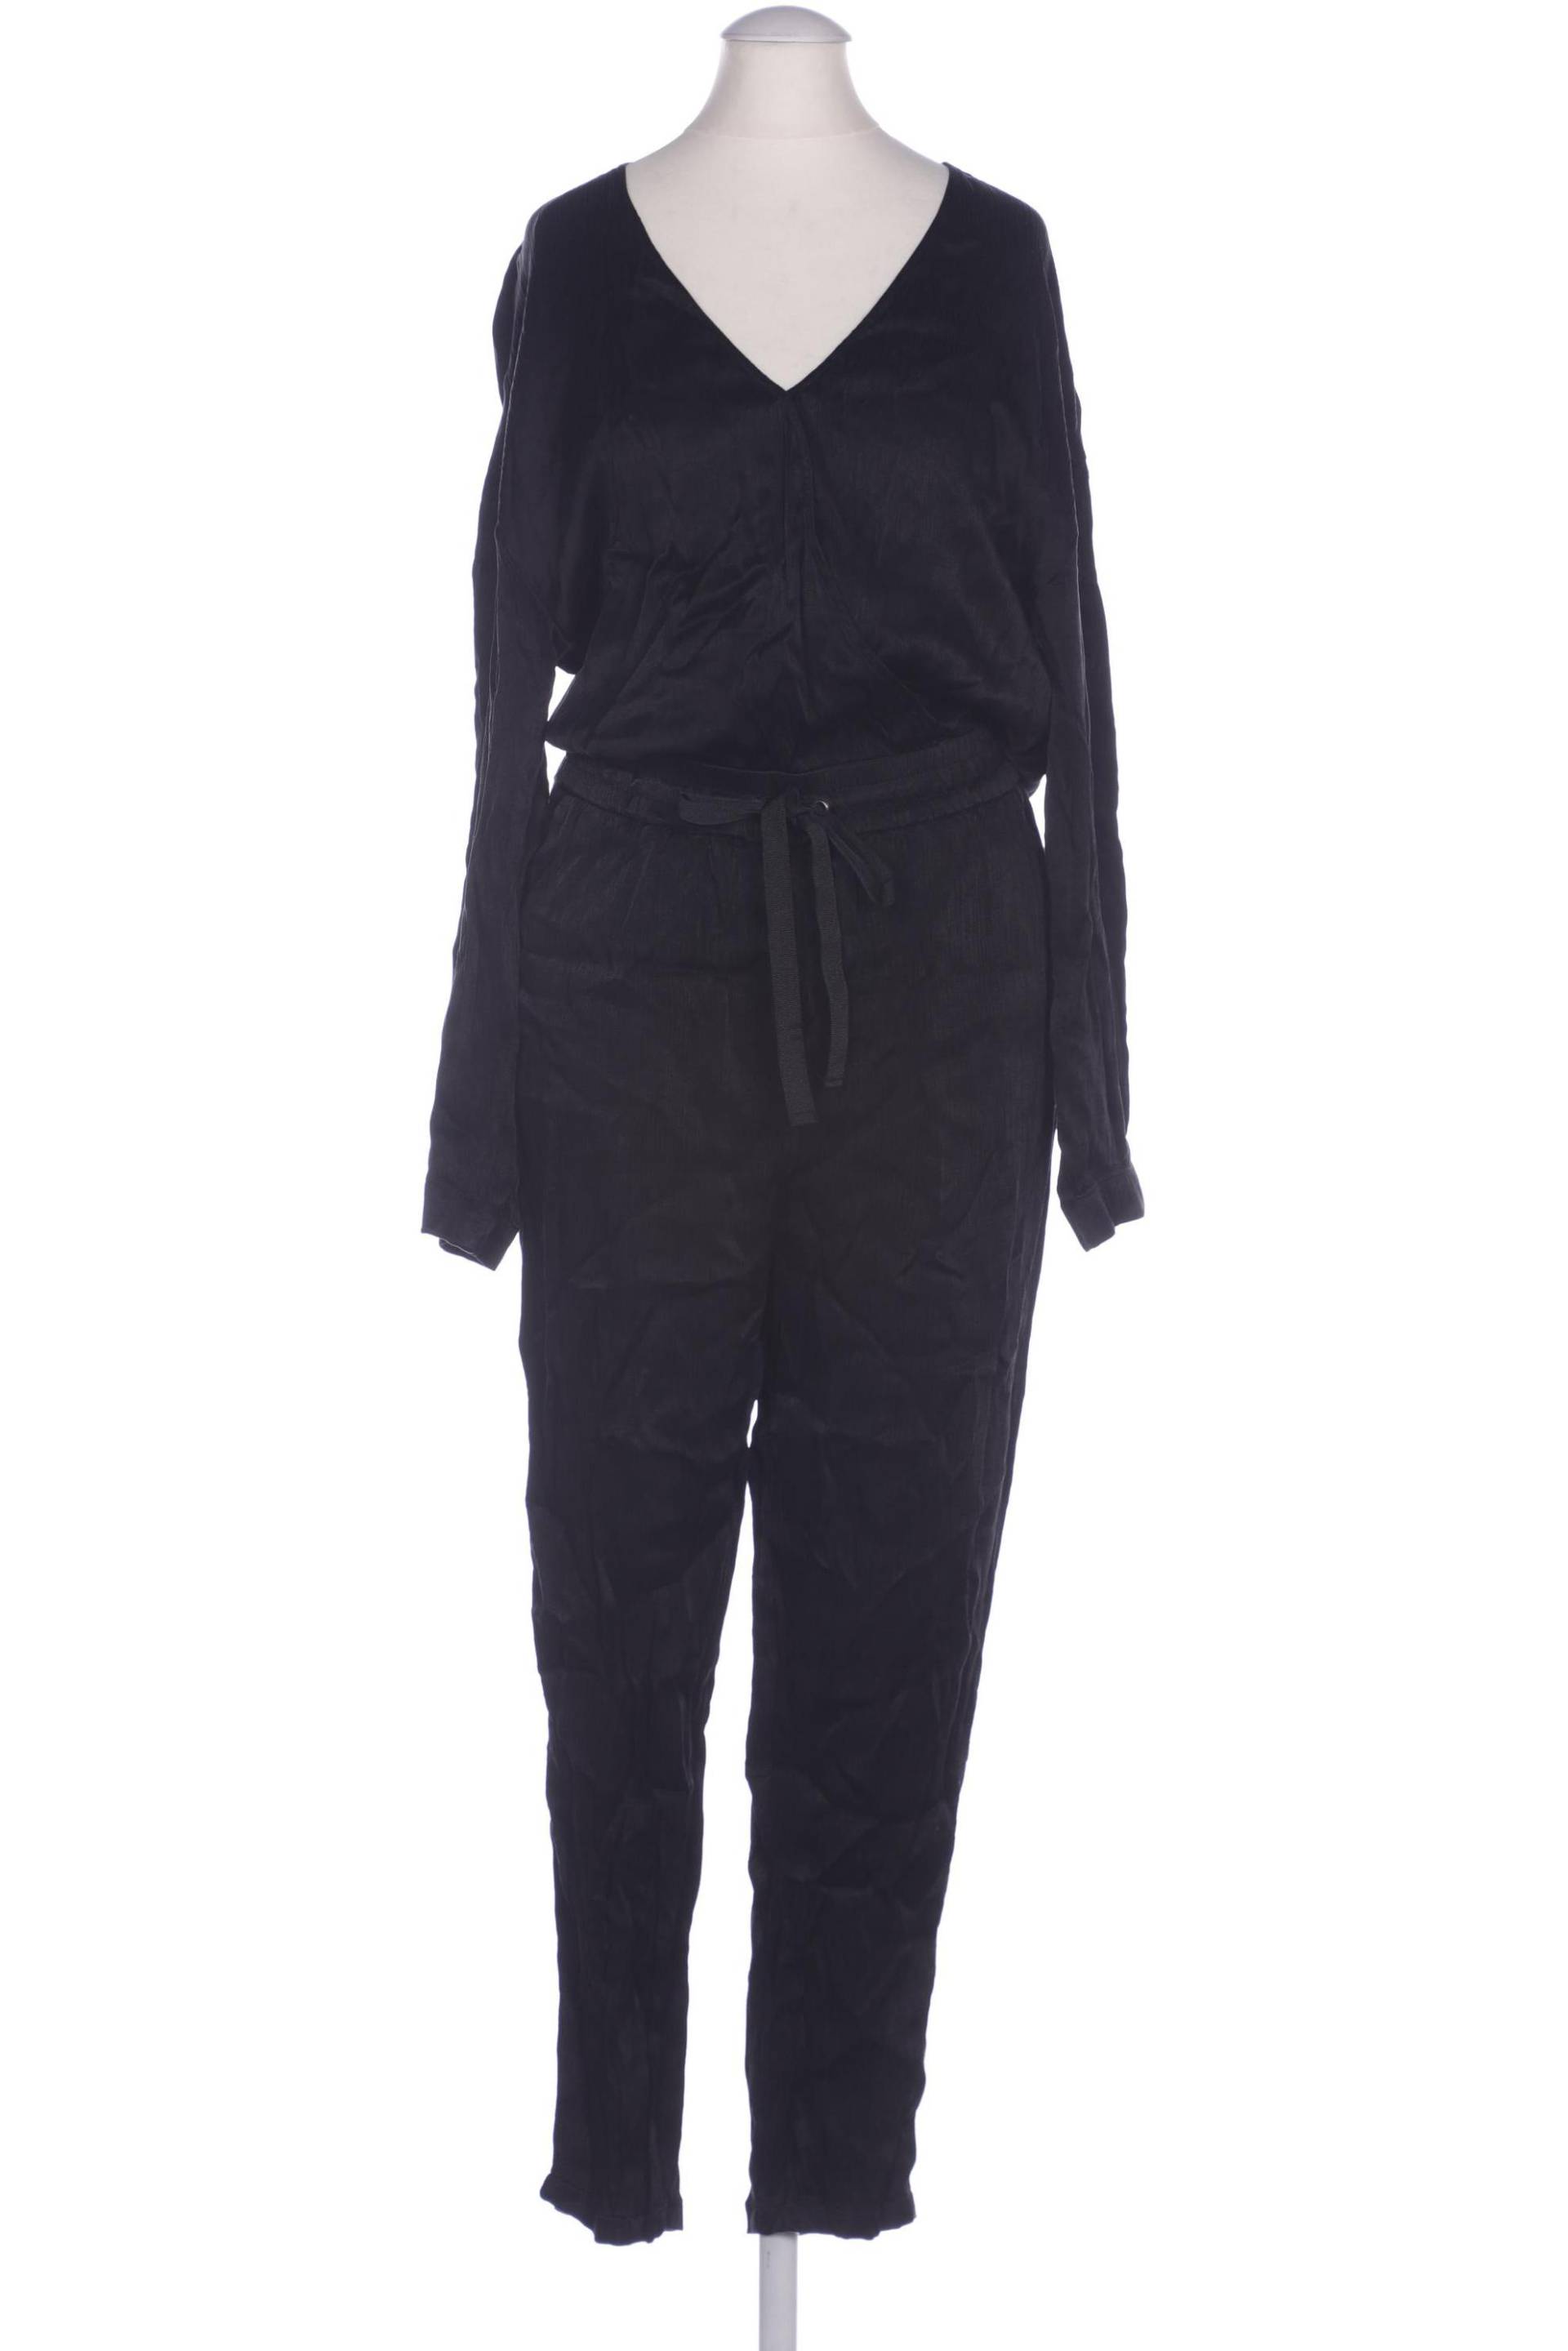 Sisley Damen Jumpsuit/Overall, schwarz, Gr. 36 von Sisley